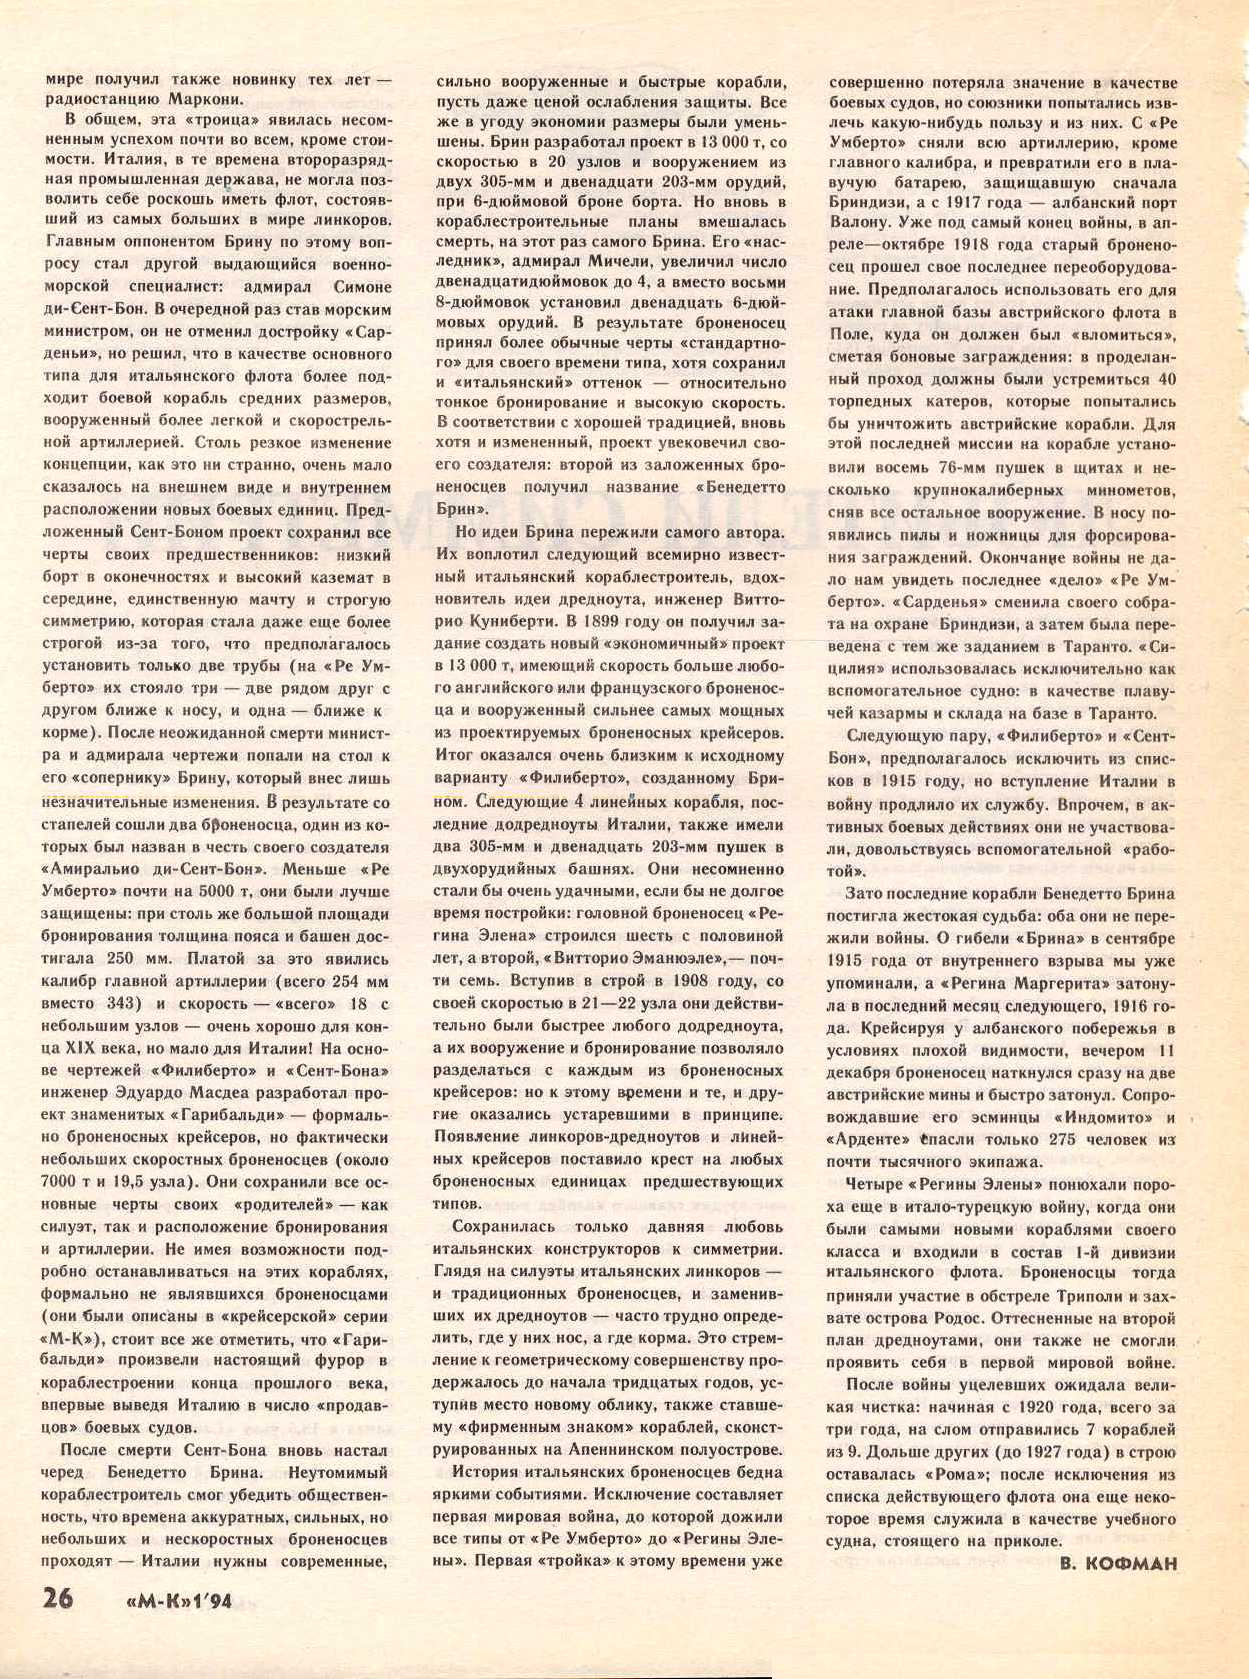 МК 1, 1994, 26 c.